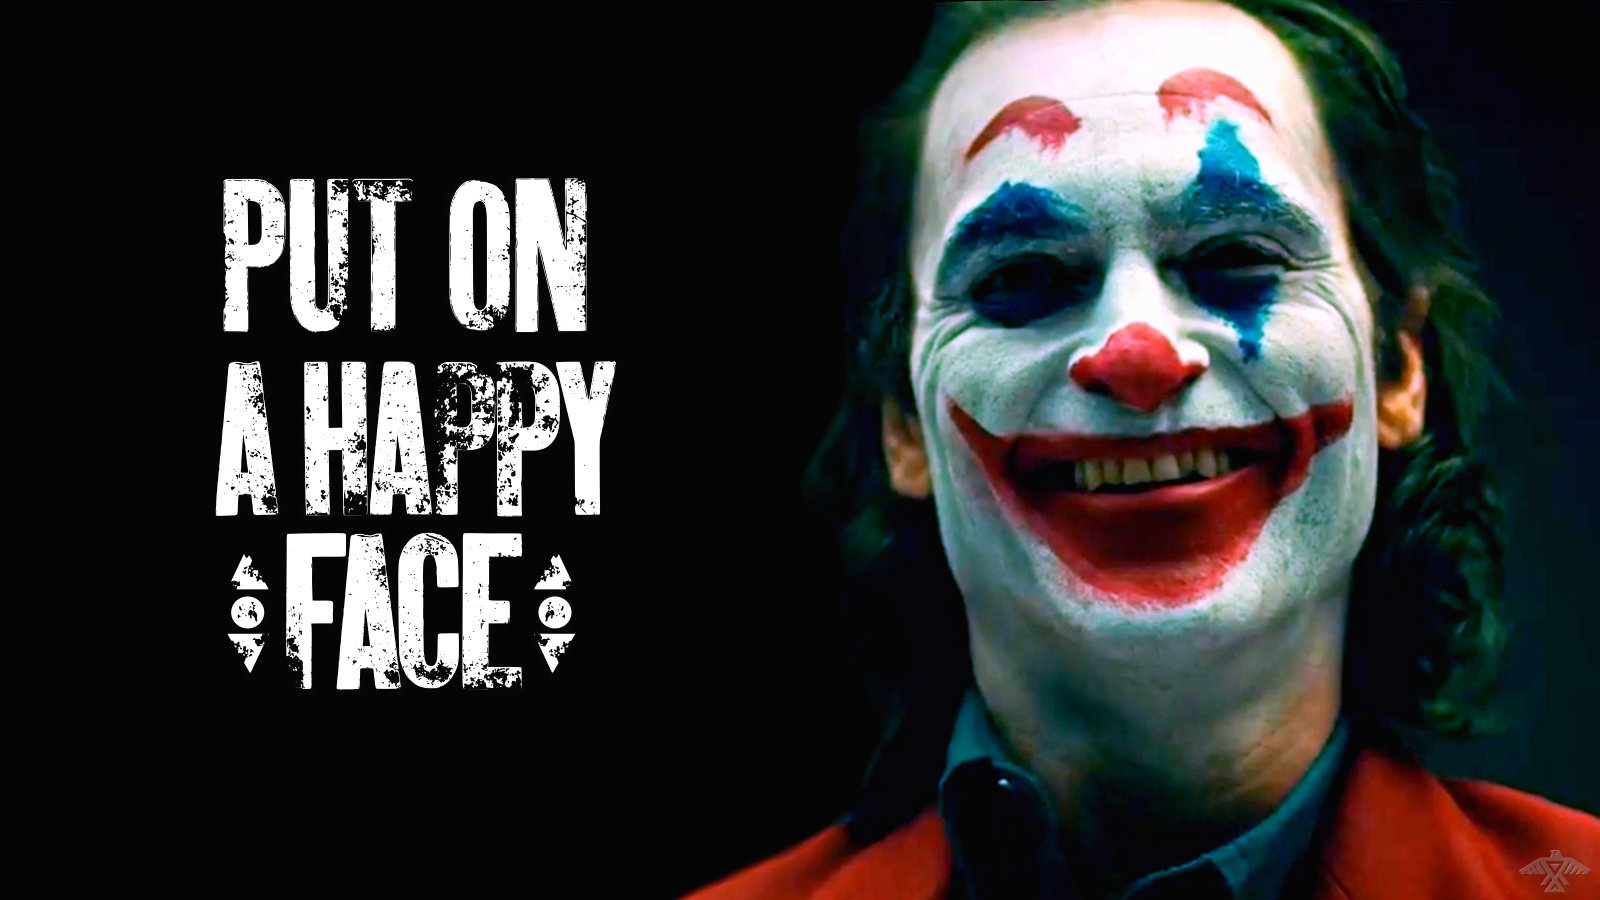 Arthur Fleck/joker - Just Put On A Happy Face Joker , HD Wallpaper & Backgrounds